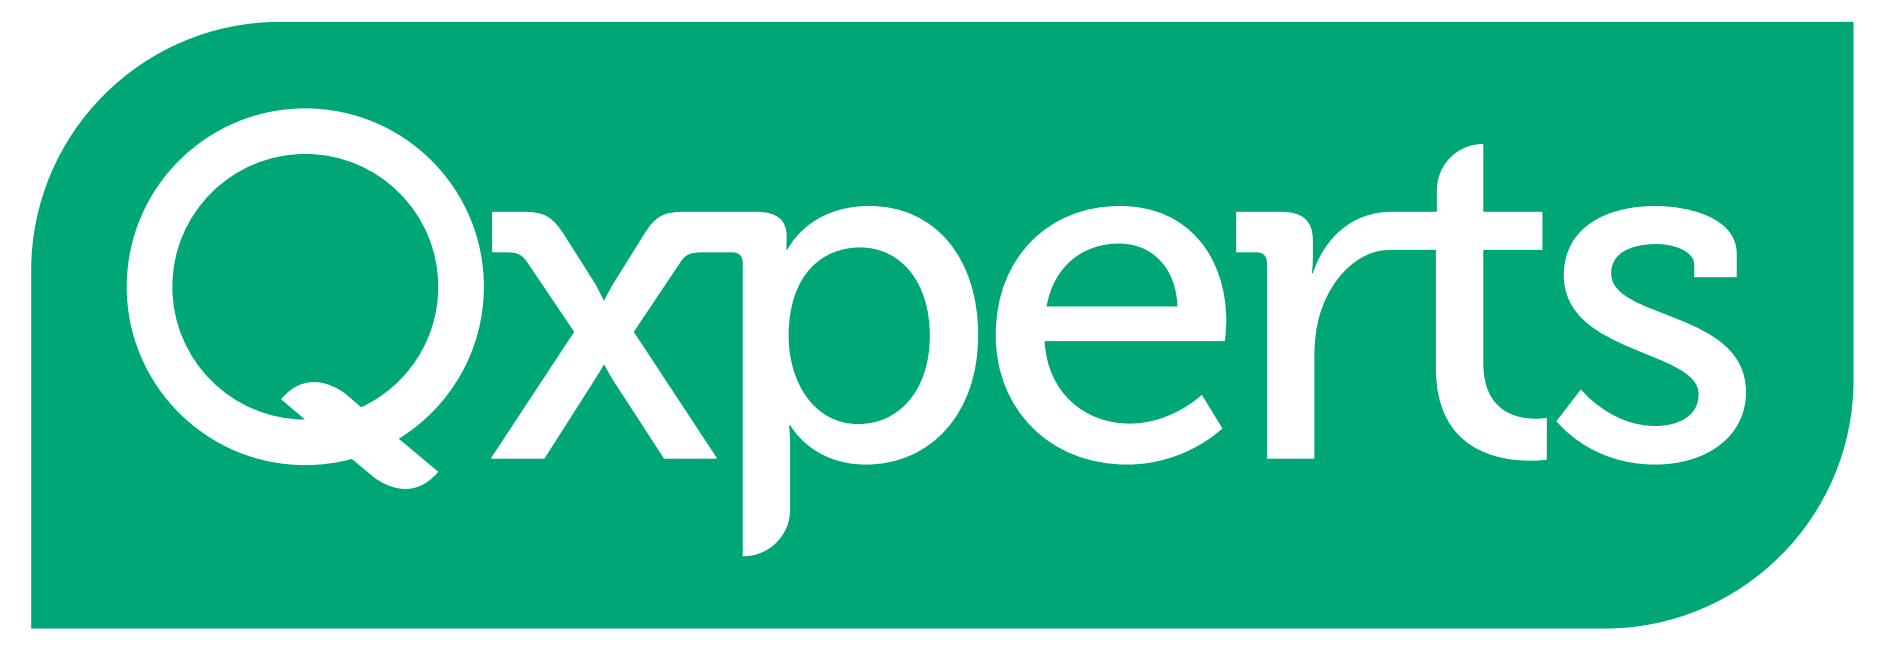 Qxperts Logo